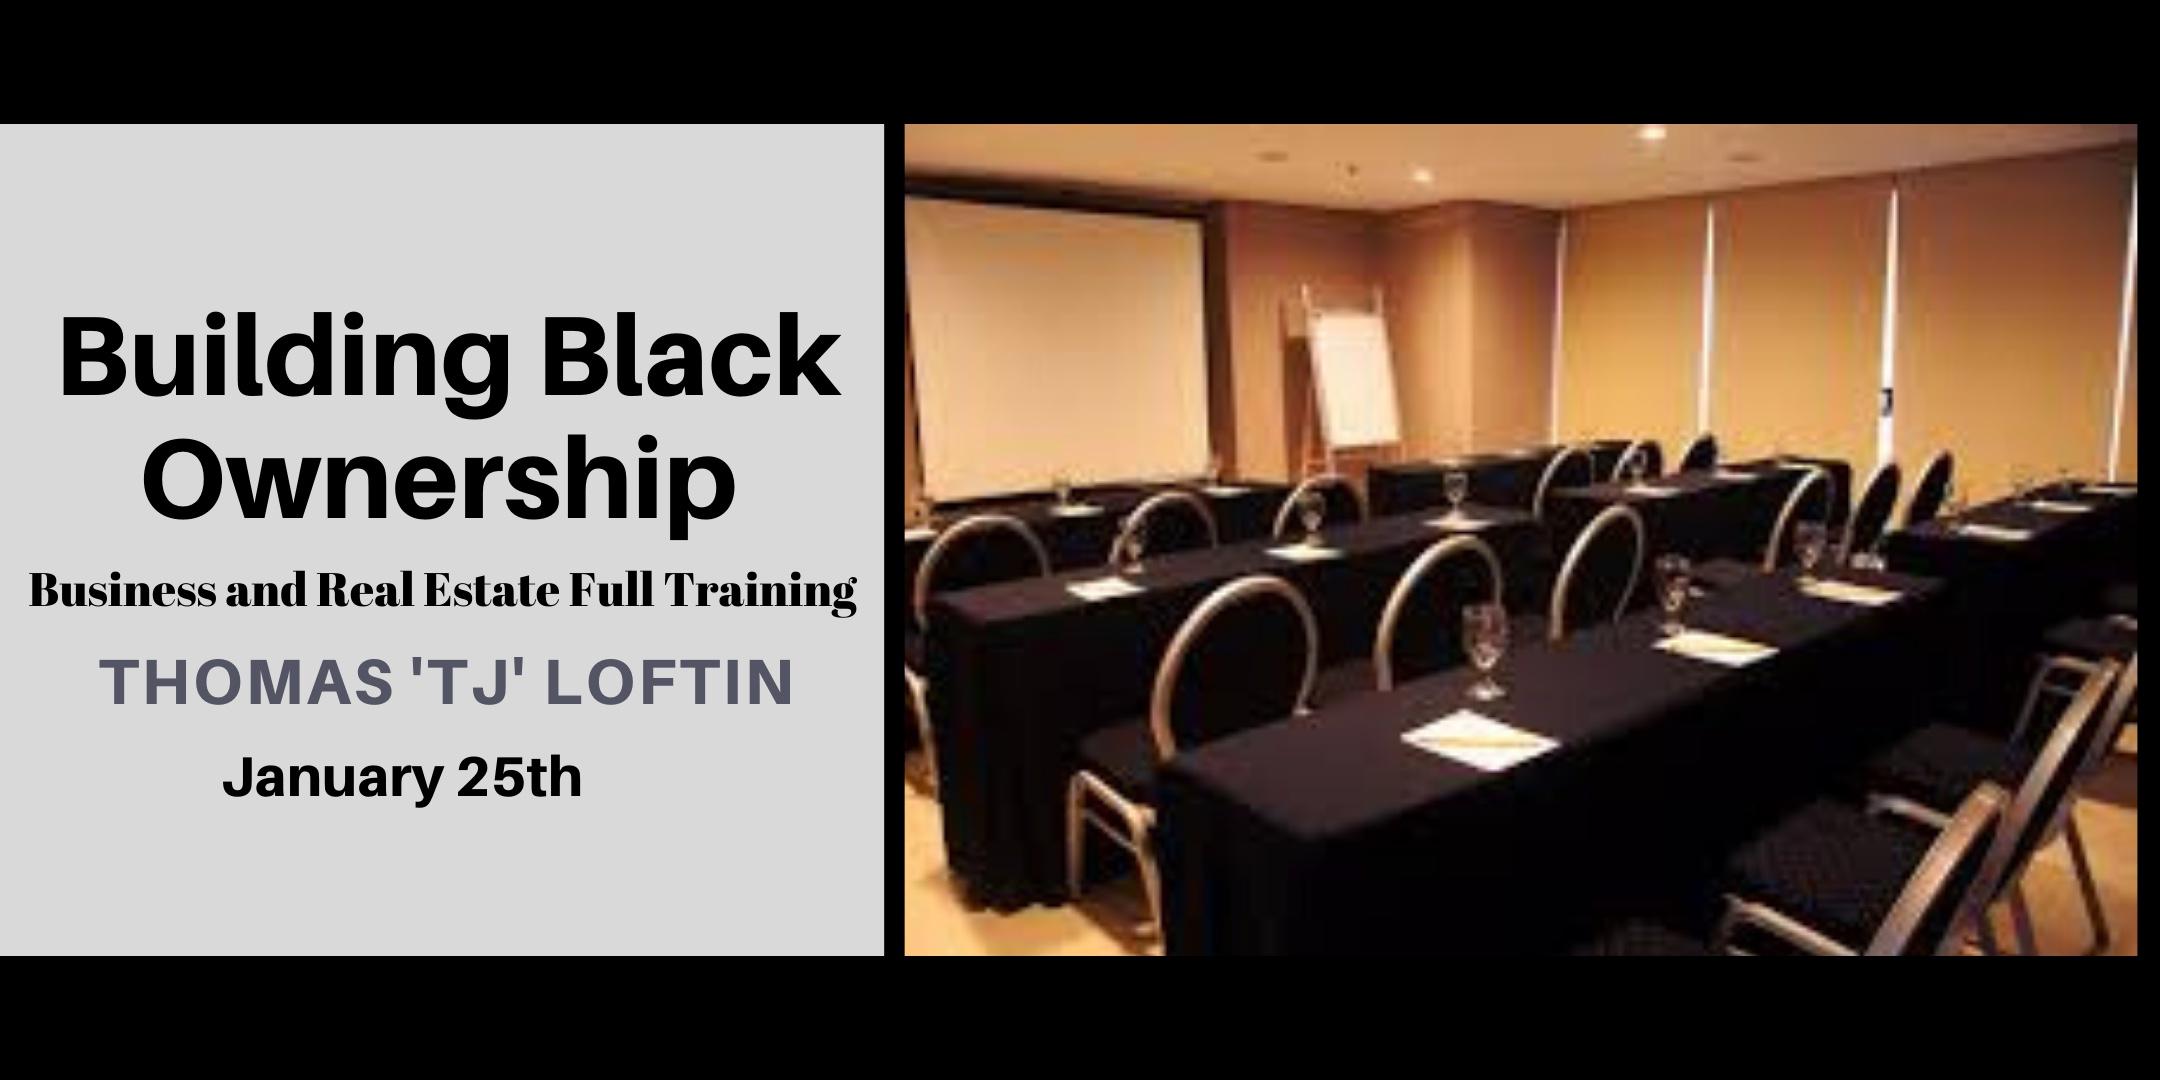 The Blackprint for 2020 Full Training